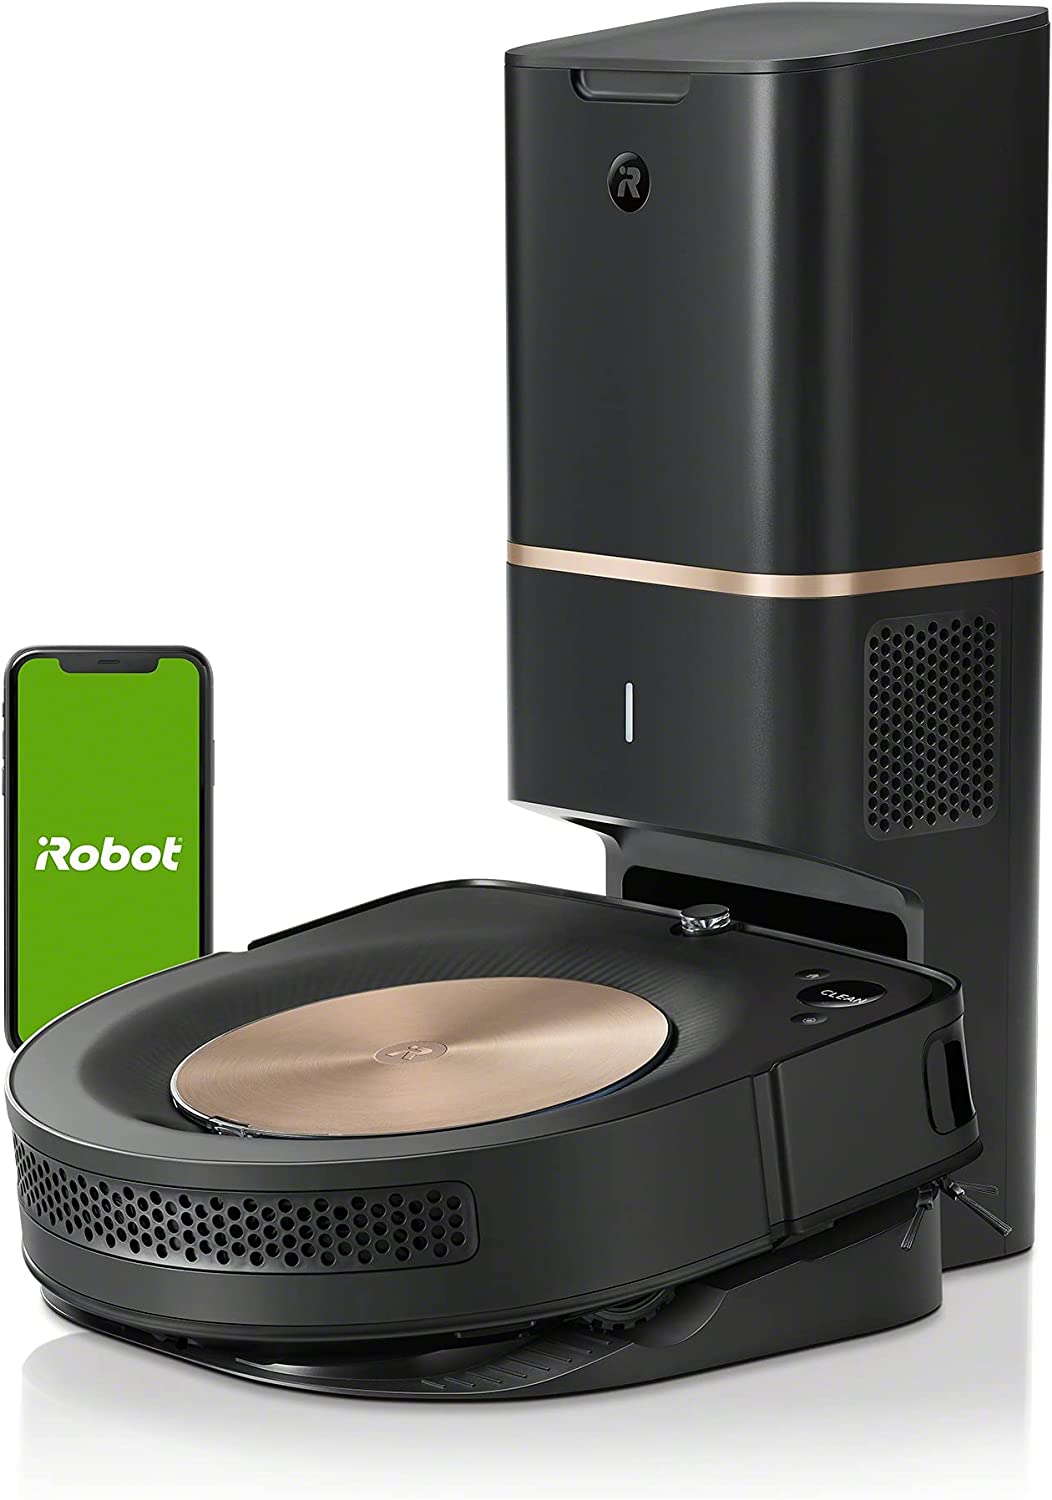 Roomba s9+ vs Roomba Combo i8+ vs Roomba Combo j7+